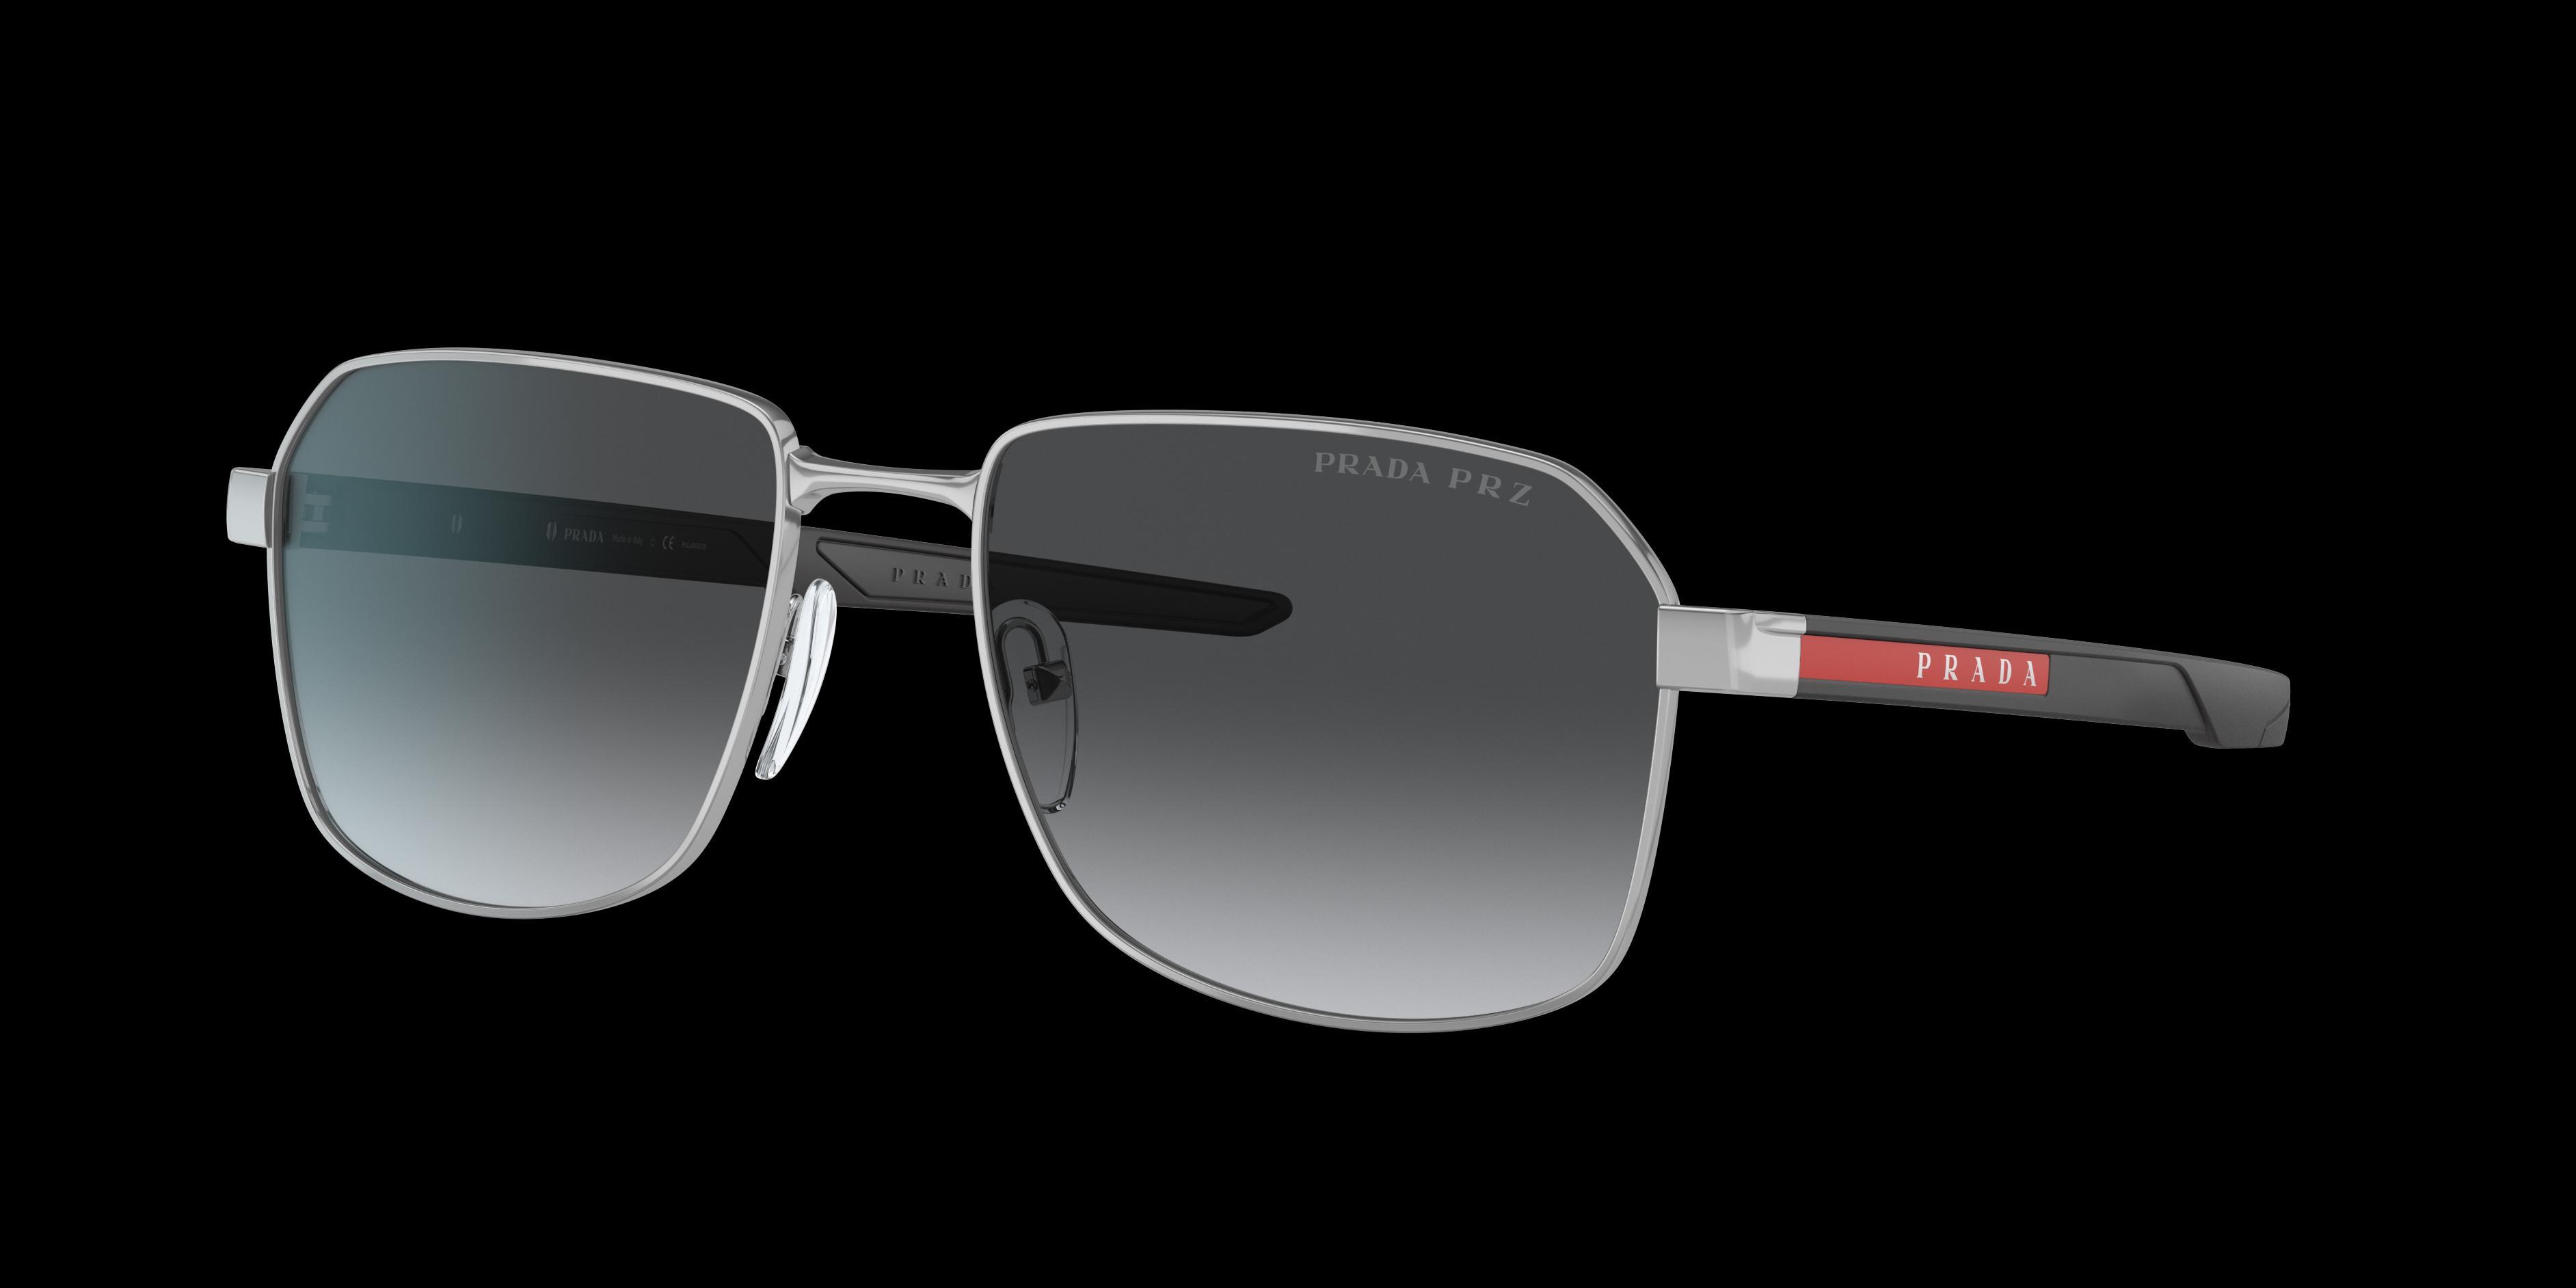 Prada Linea Rossa 57mm Polarized Gradient Rectangular Sunglasses Product Image